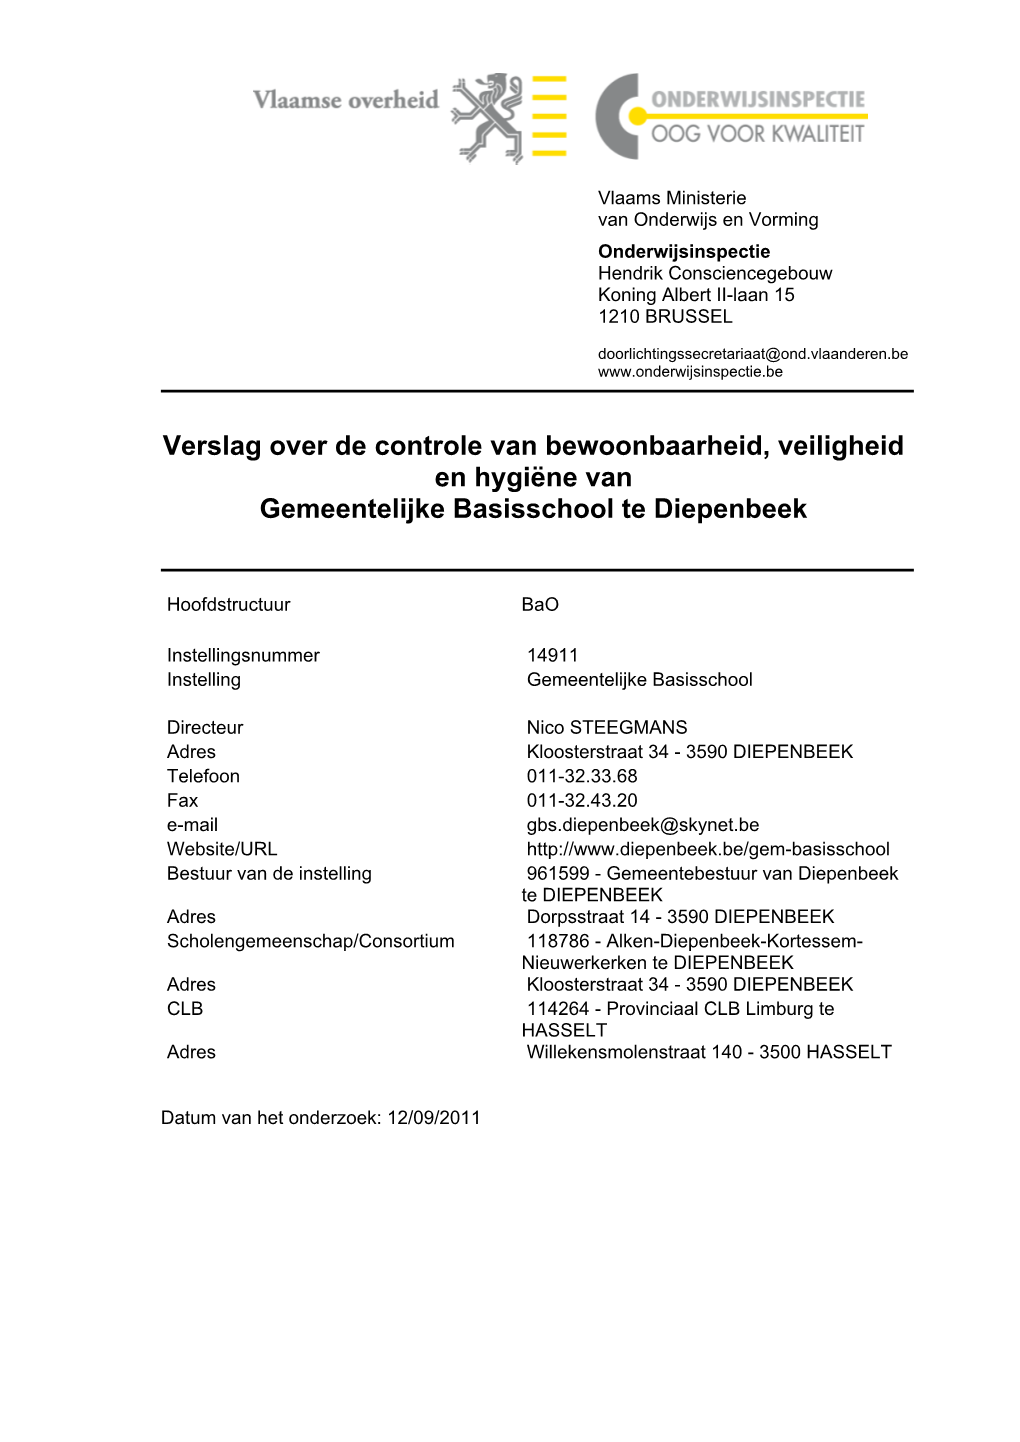 Verslag Over De Controle Van Bewoonbaarheid, Veiligheid En Hygiëne Van Gemeentelijke Basisschool Te Diepenbeek